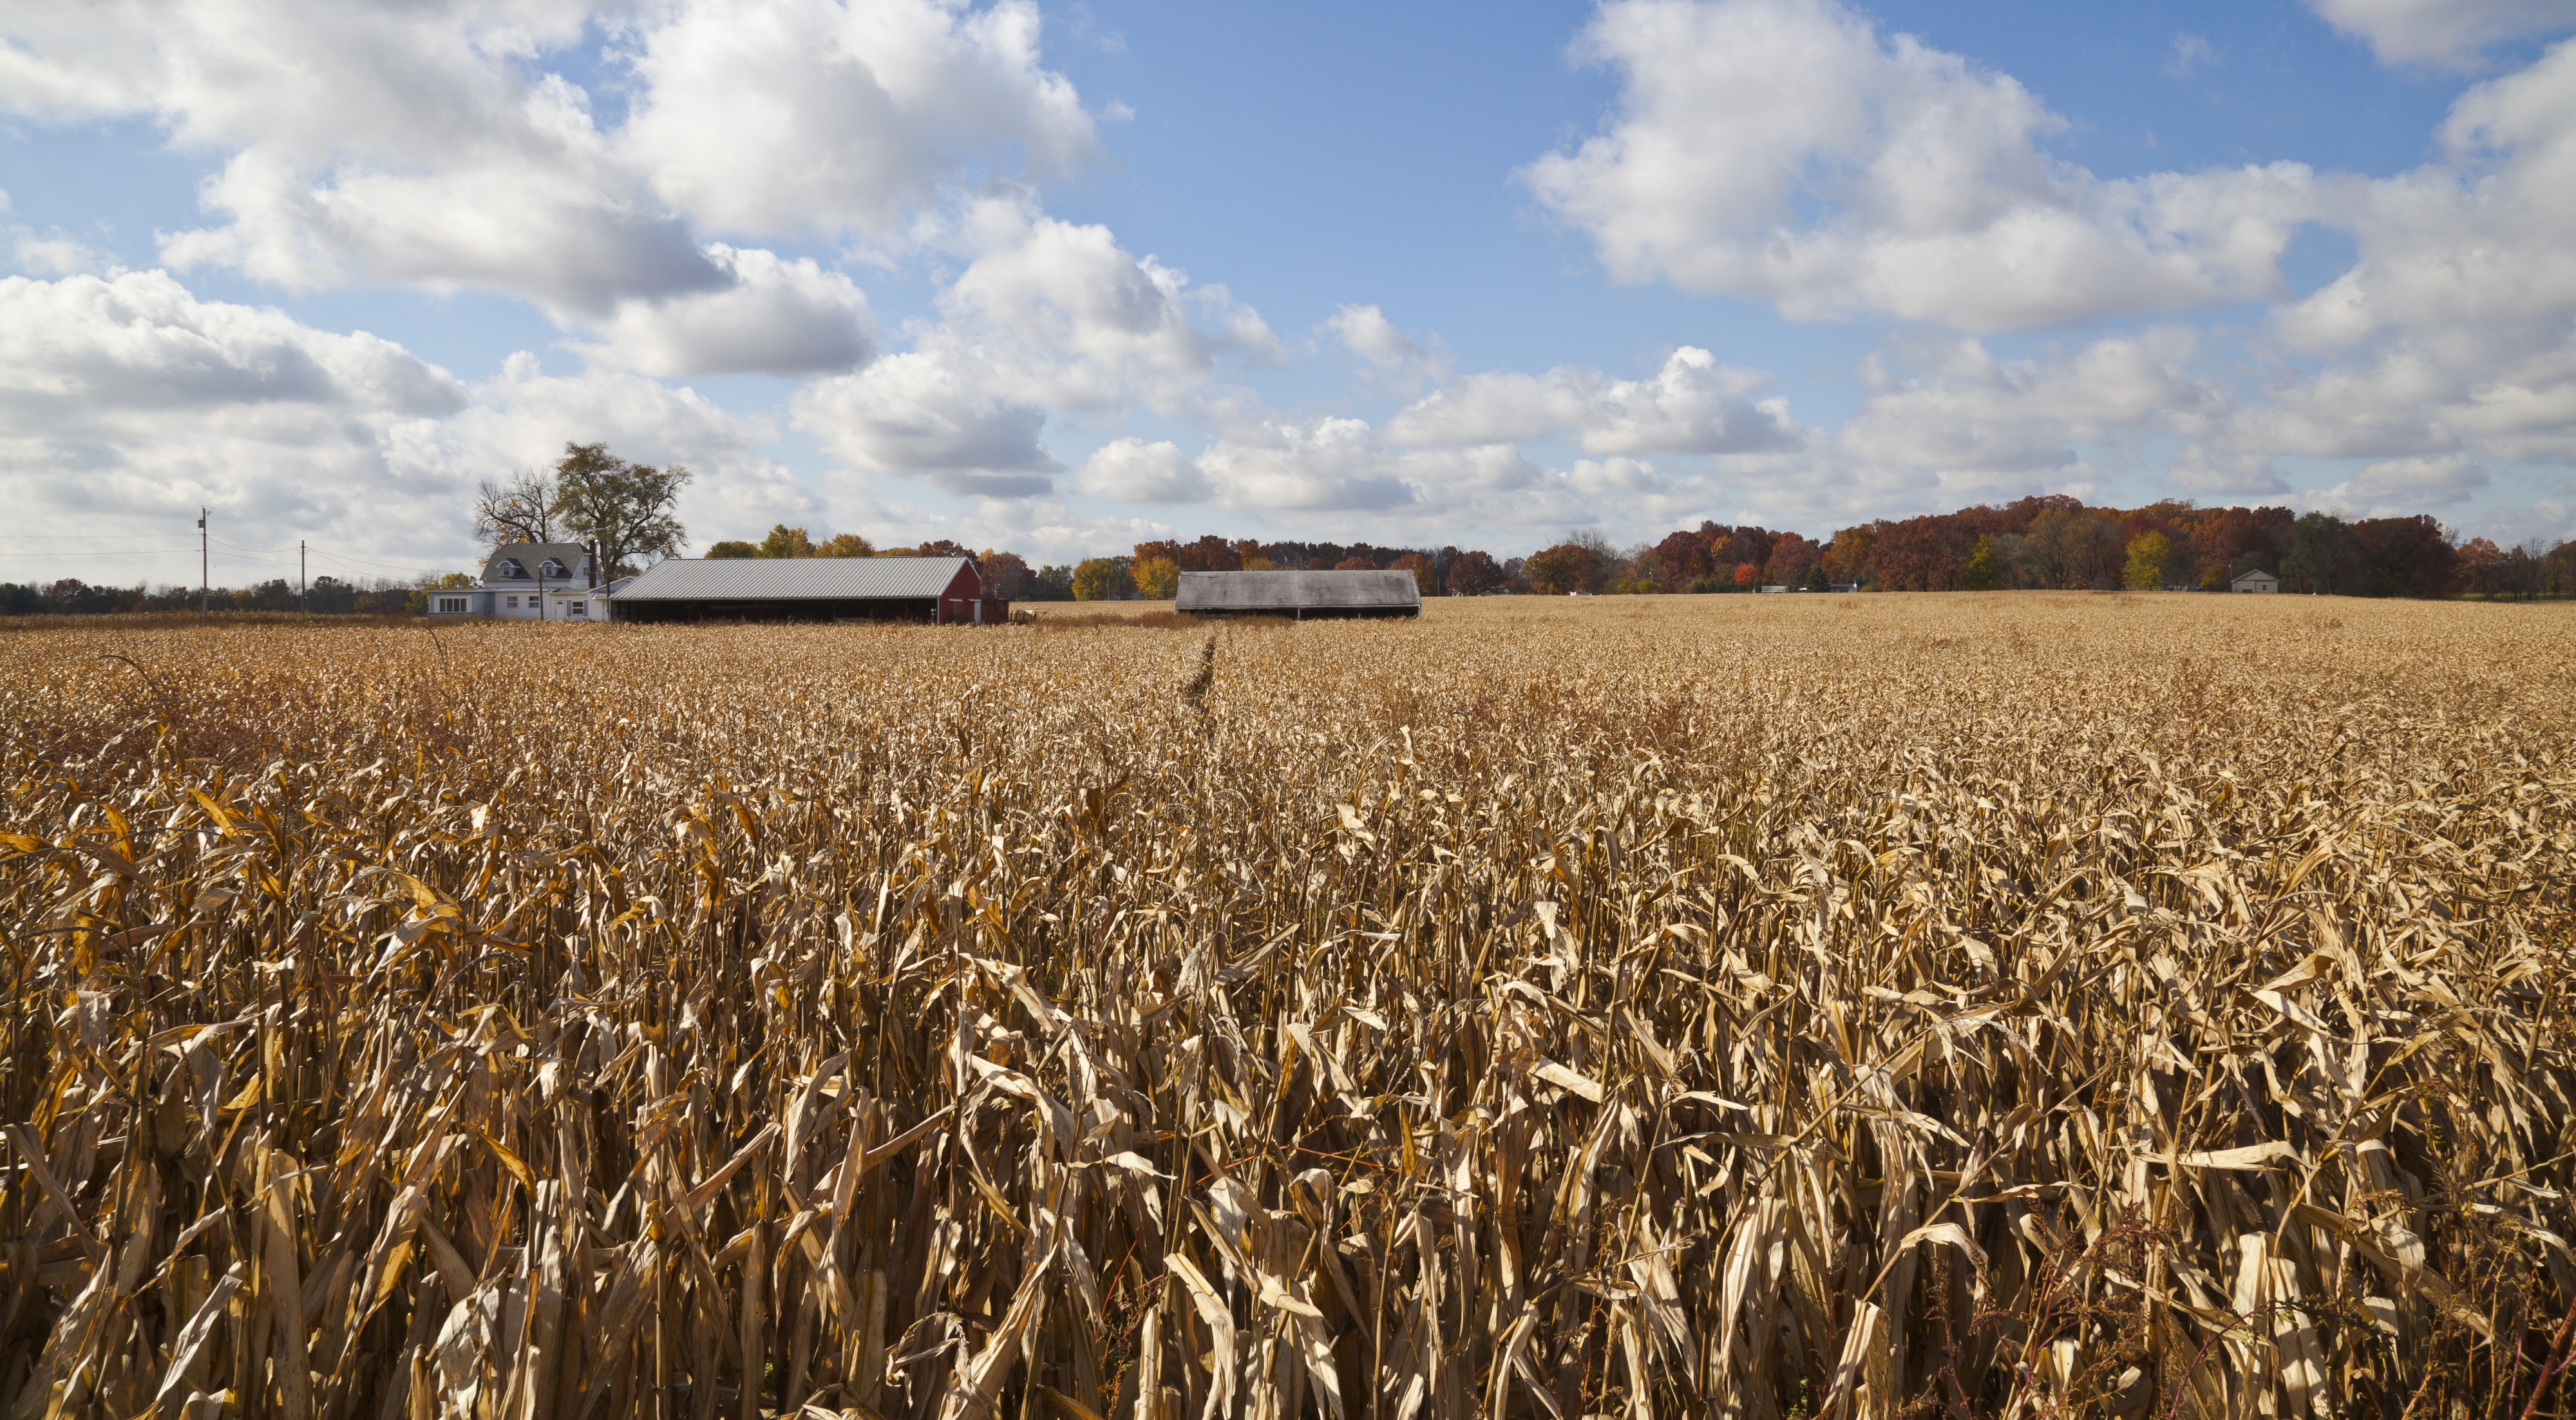 Campo de maiz, Walker, Indiana, Estados Unidos, 2012-10-20, DD 03